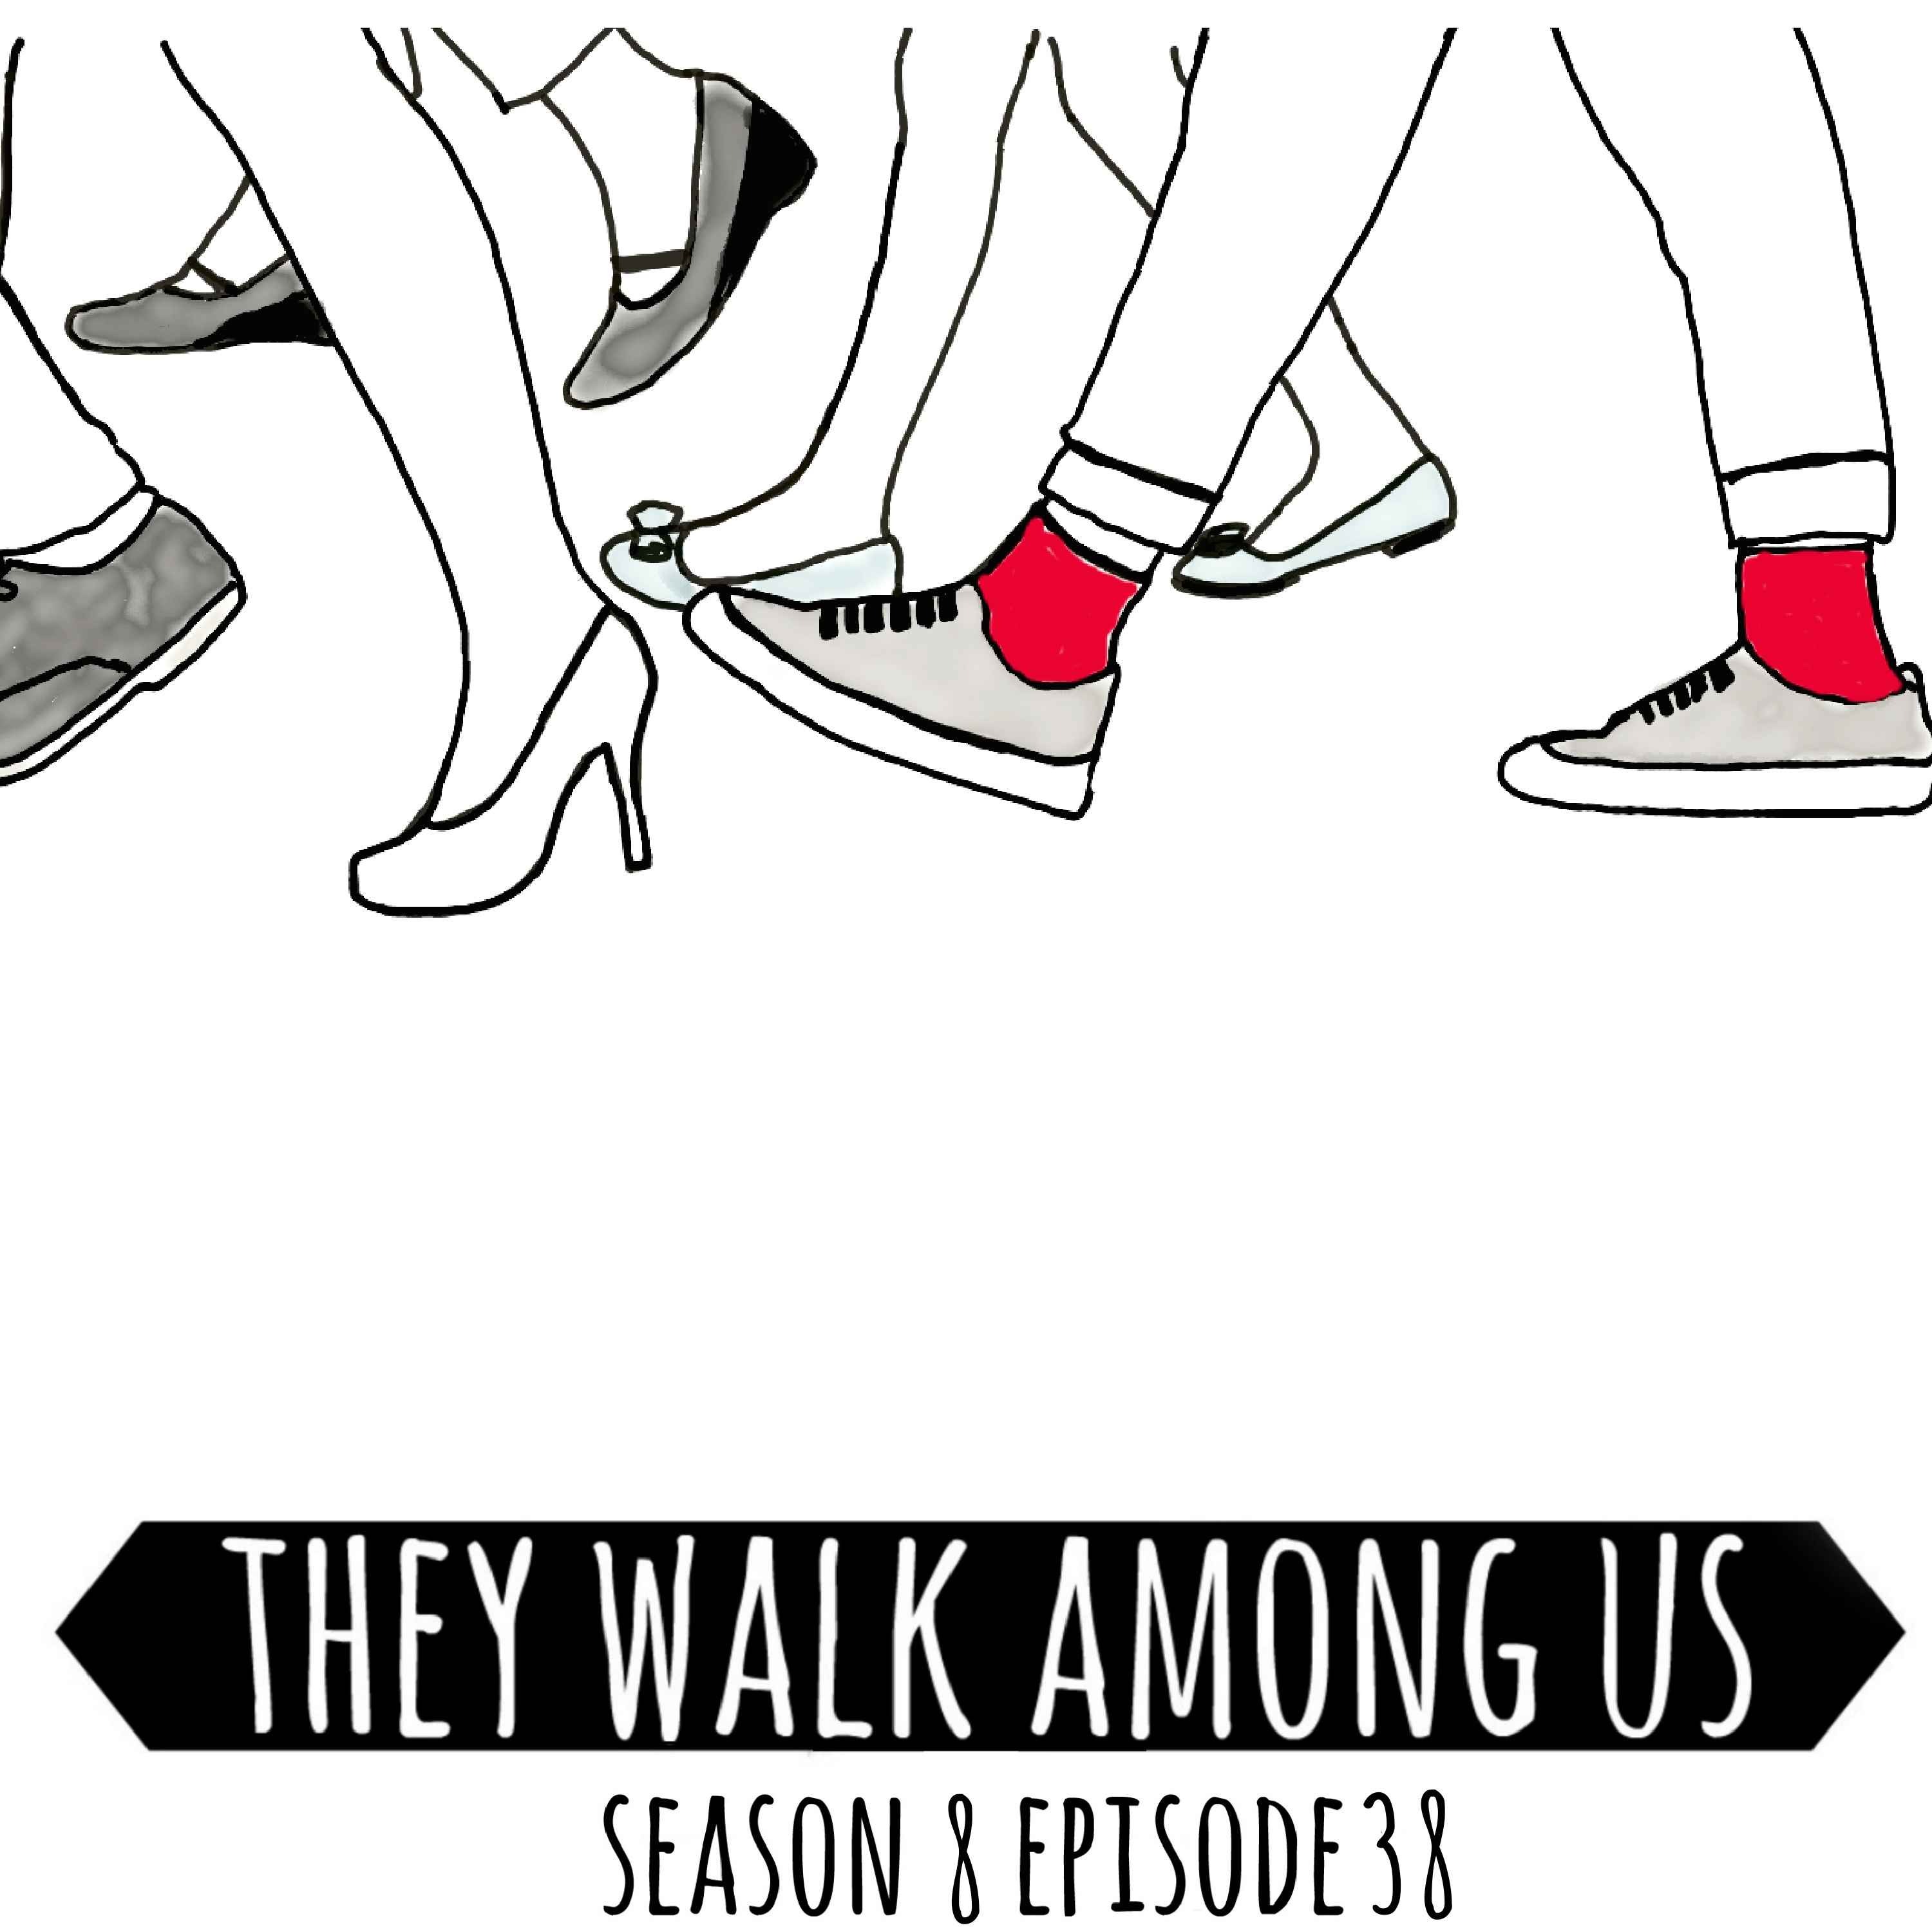 Season 8 - Episode 38